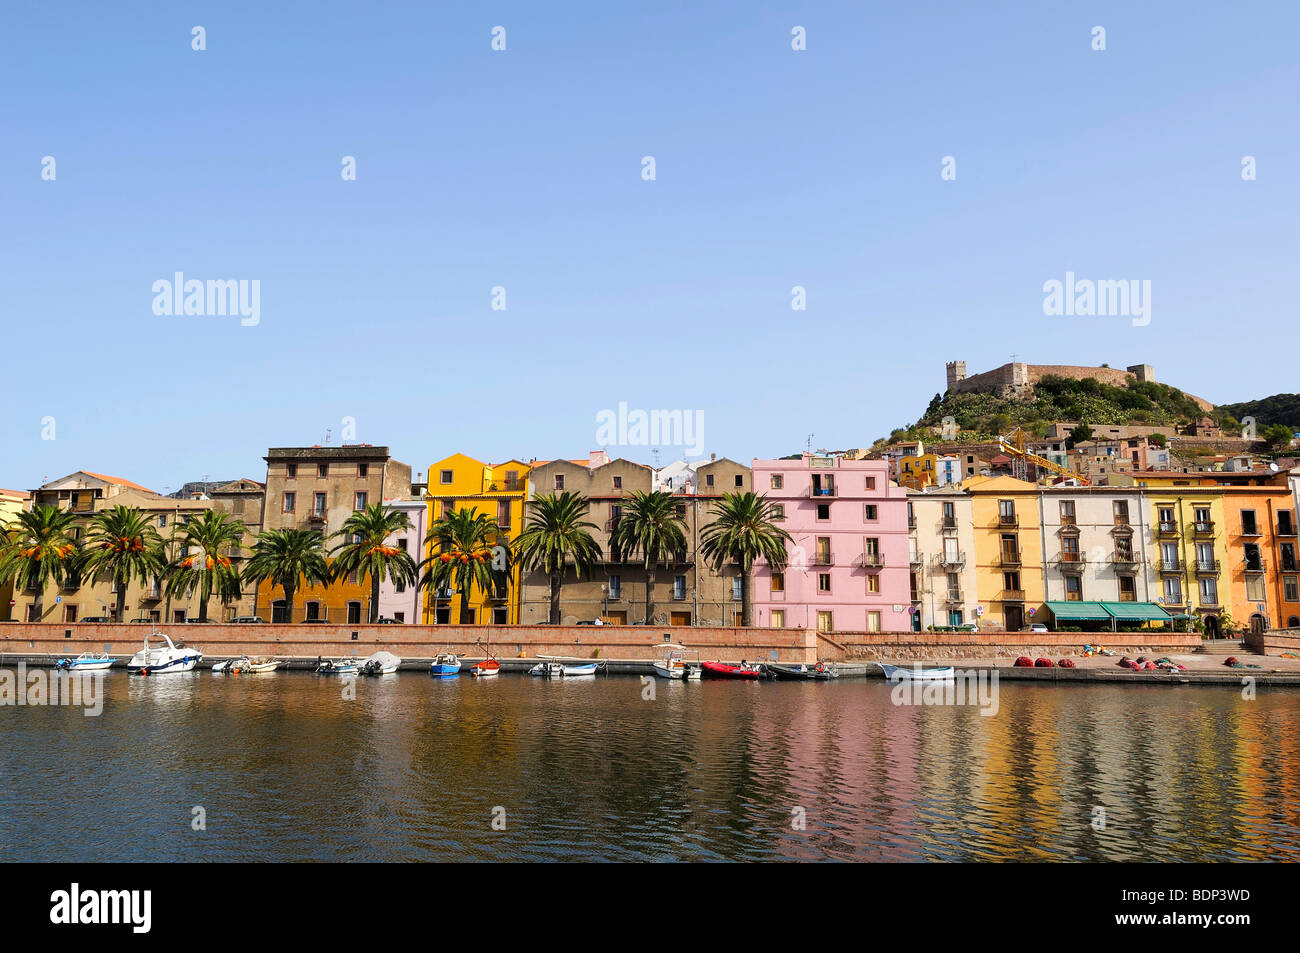 Affacciato sul fiume Temo e il centro storico della città con fortezza Malaspina, Bosa, Oristano, Sardegna, Italia, Europa Foto Stock